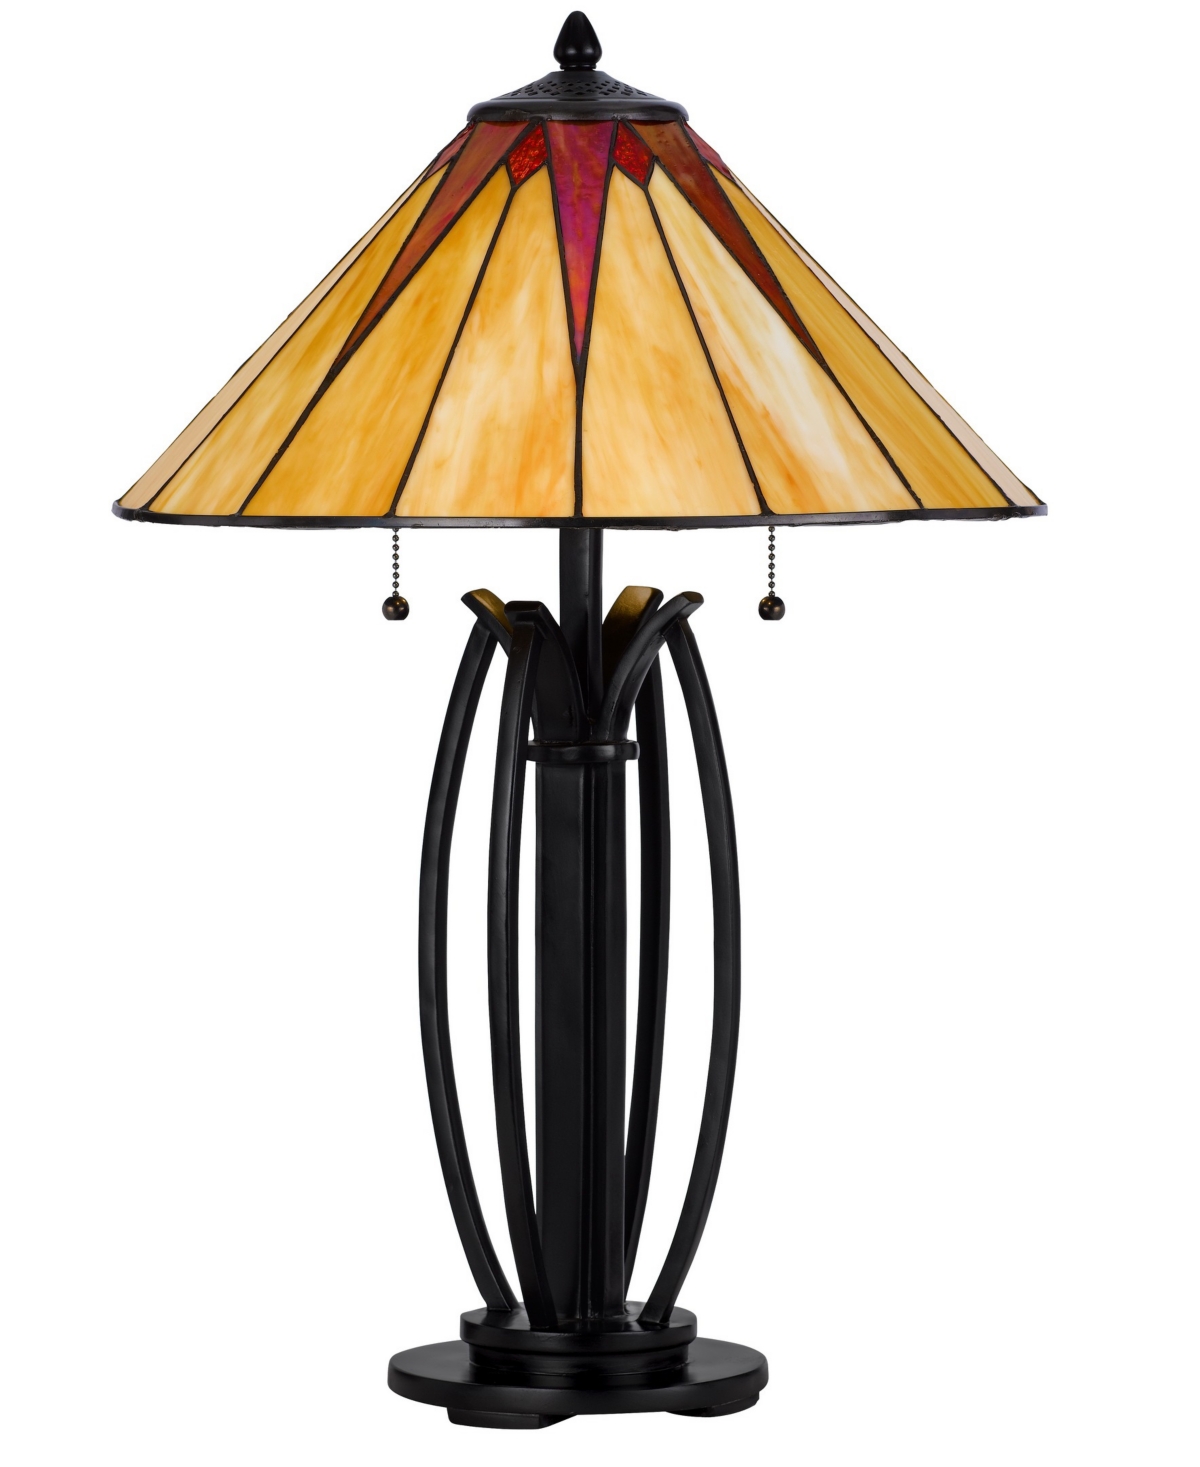 Cal Lighting 25" Height Metal And Resin Table Lamp In Dark Bronze